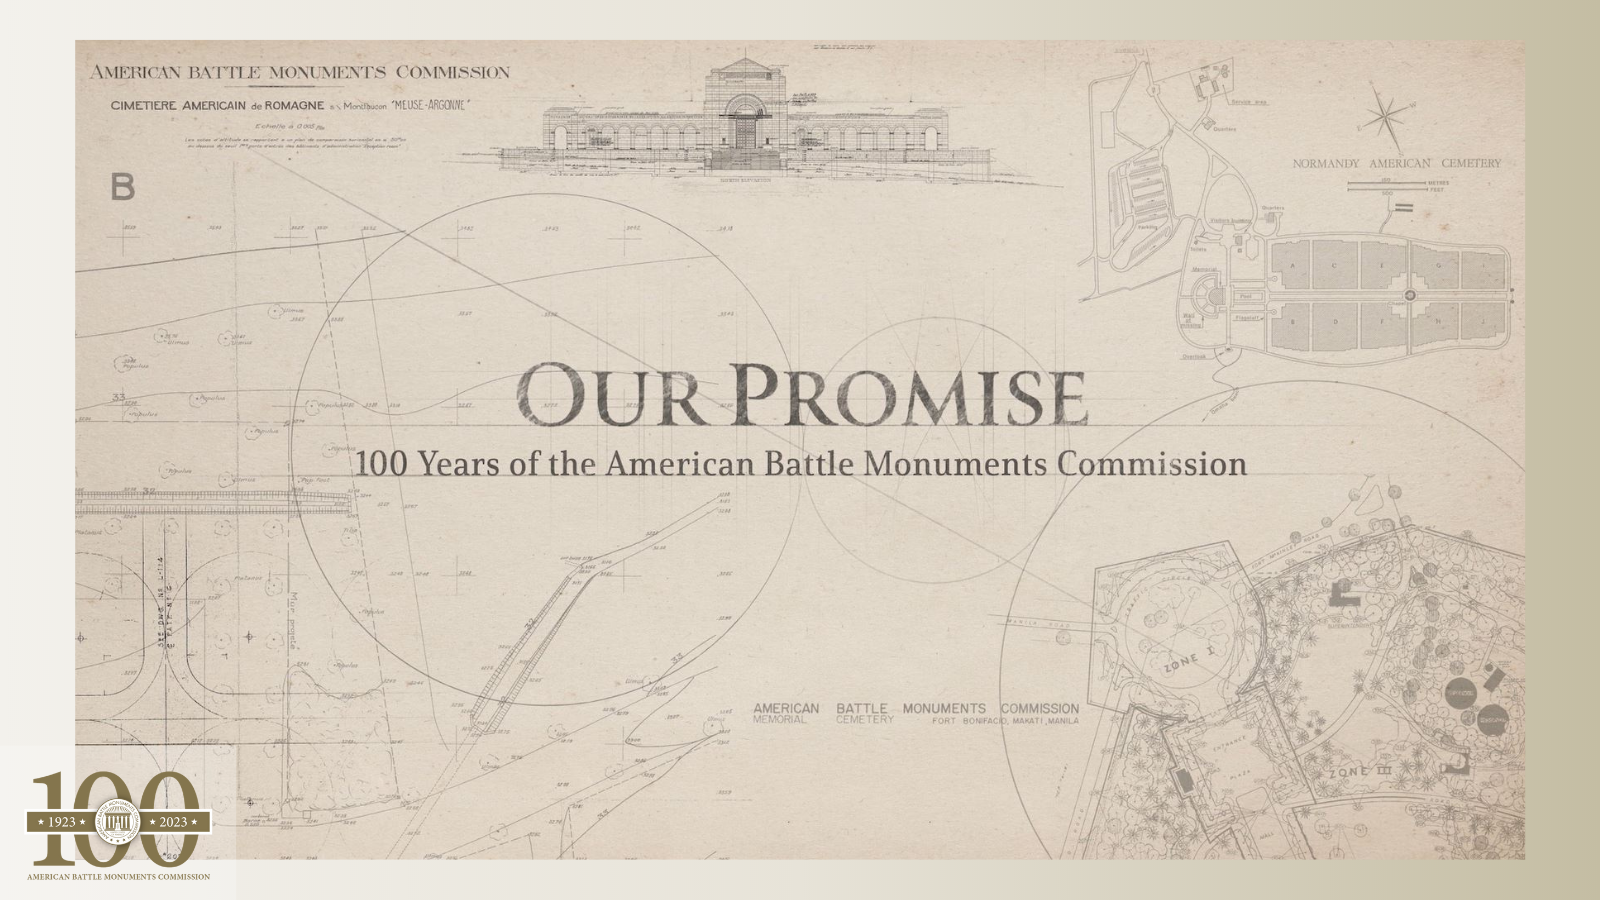 ABMC centennial documentary: "Our Promise"